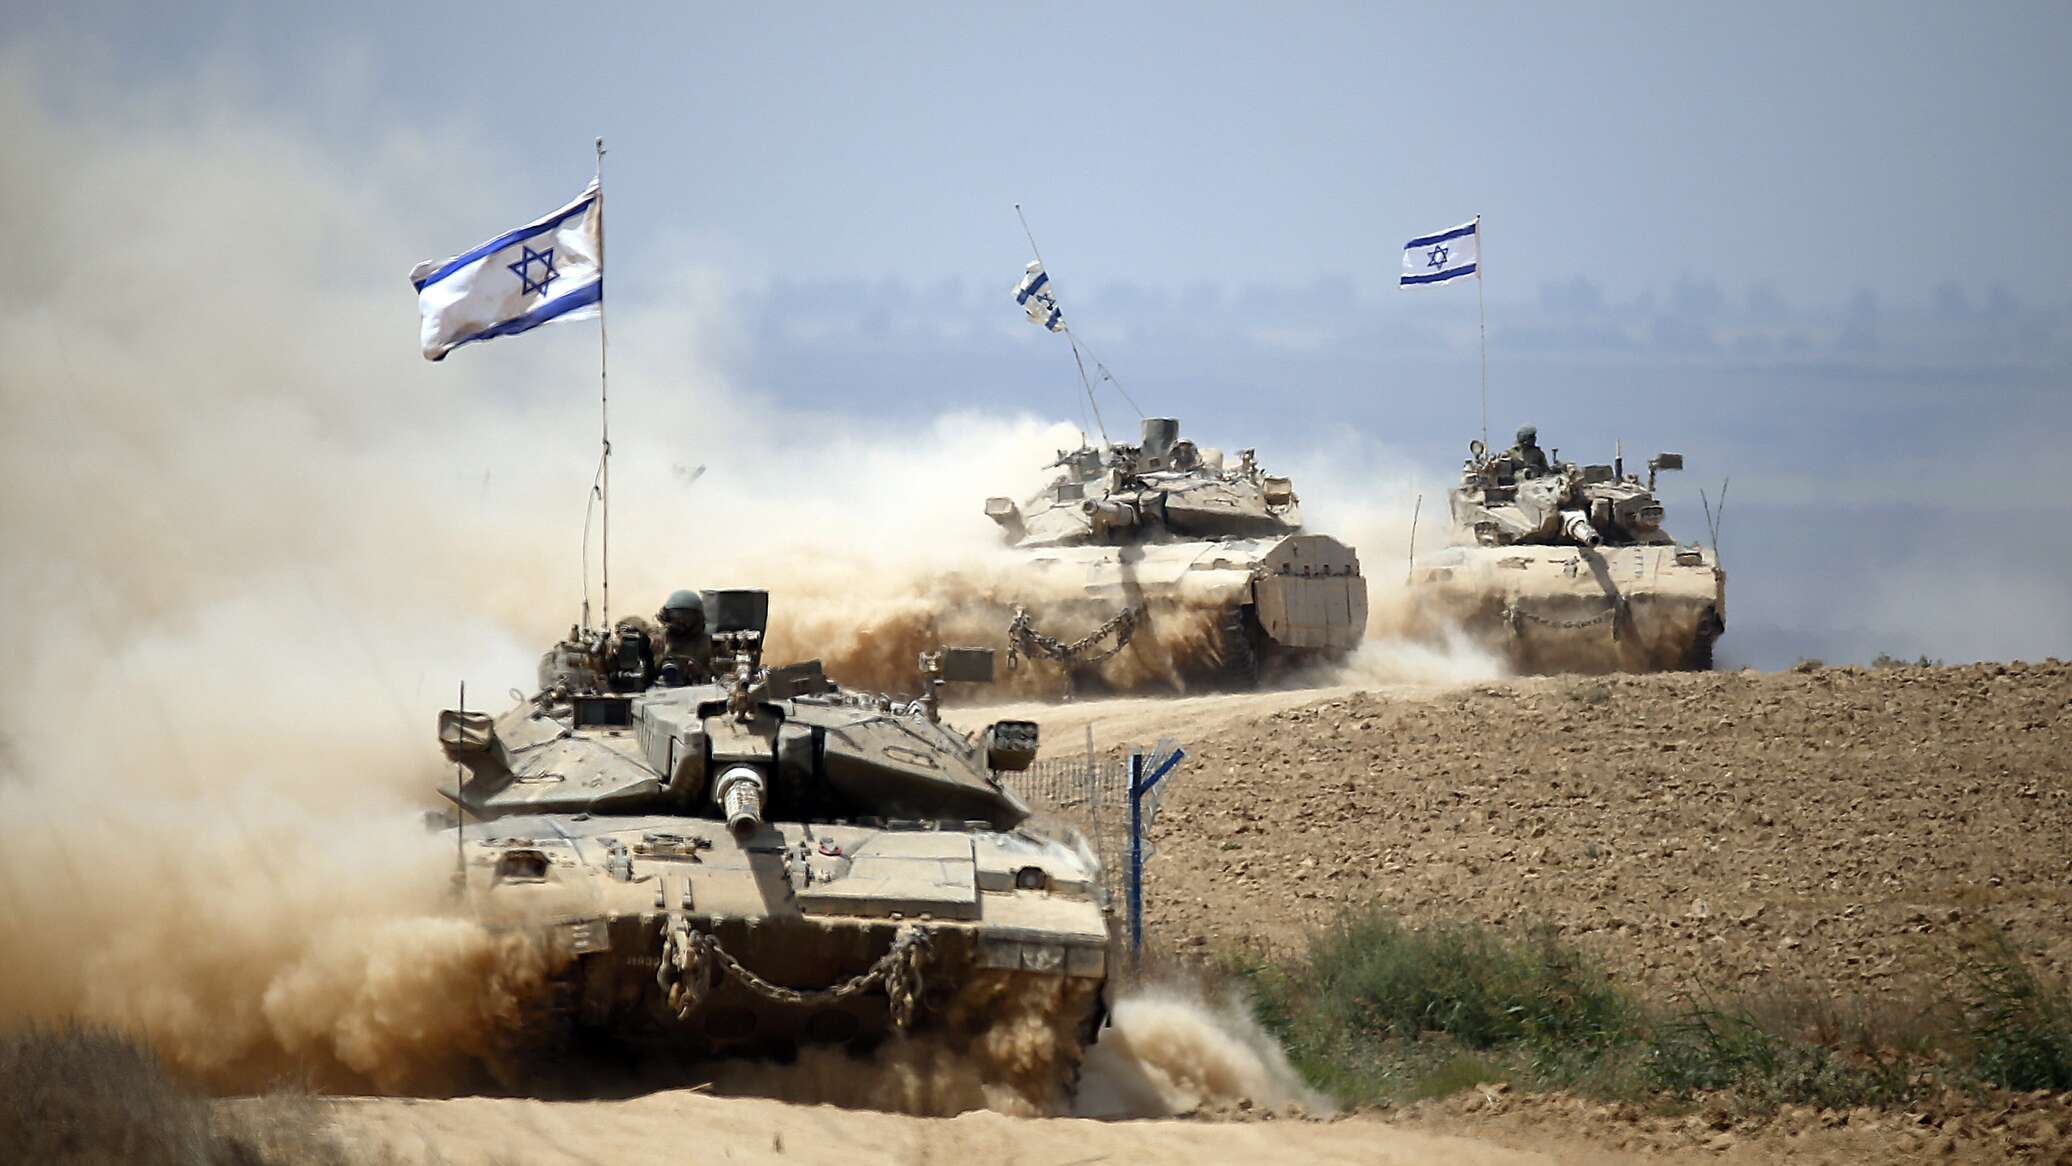 الجيش الإسرائيلي يعلن مهاجمته لأهداف عسكرية لـ"حزب الله" والأخير يطلق صاروخا مضادا للدبابات